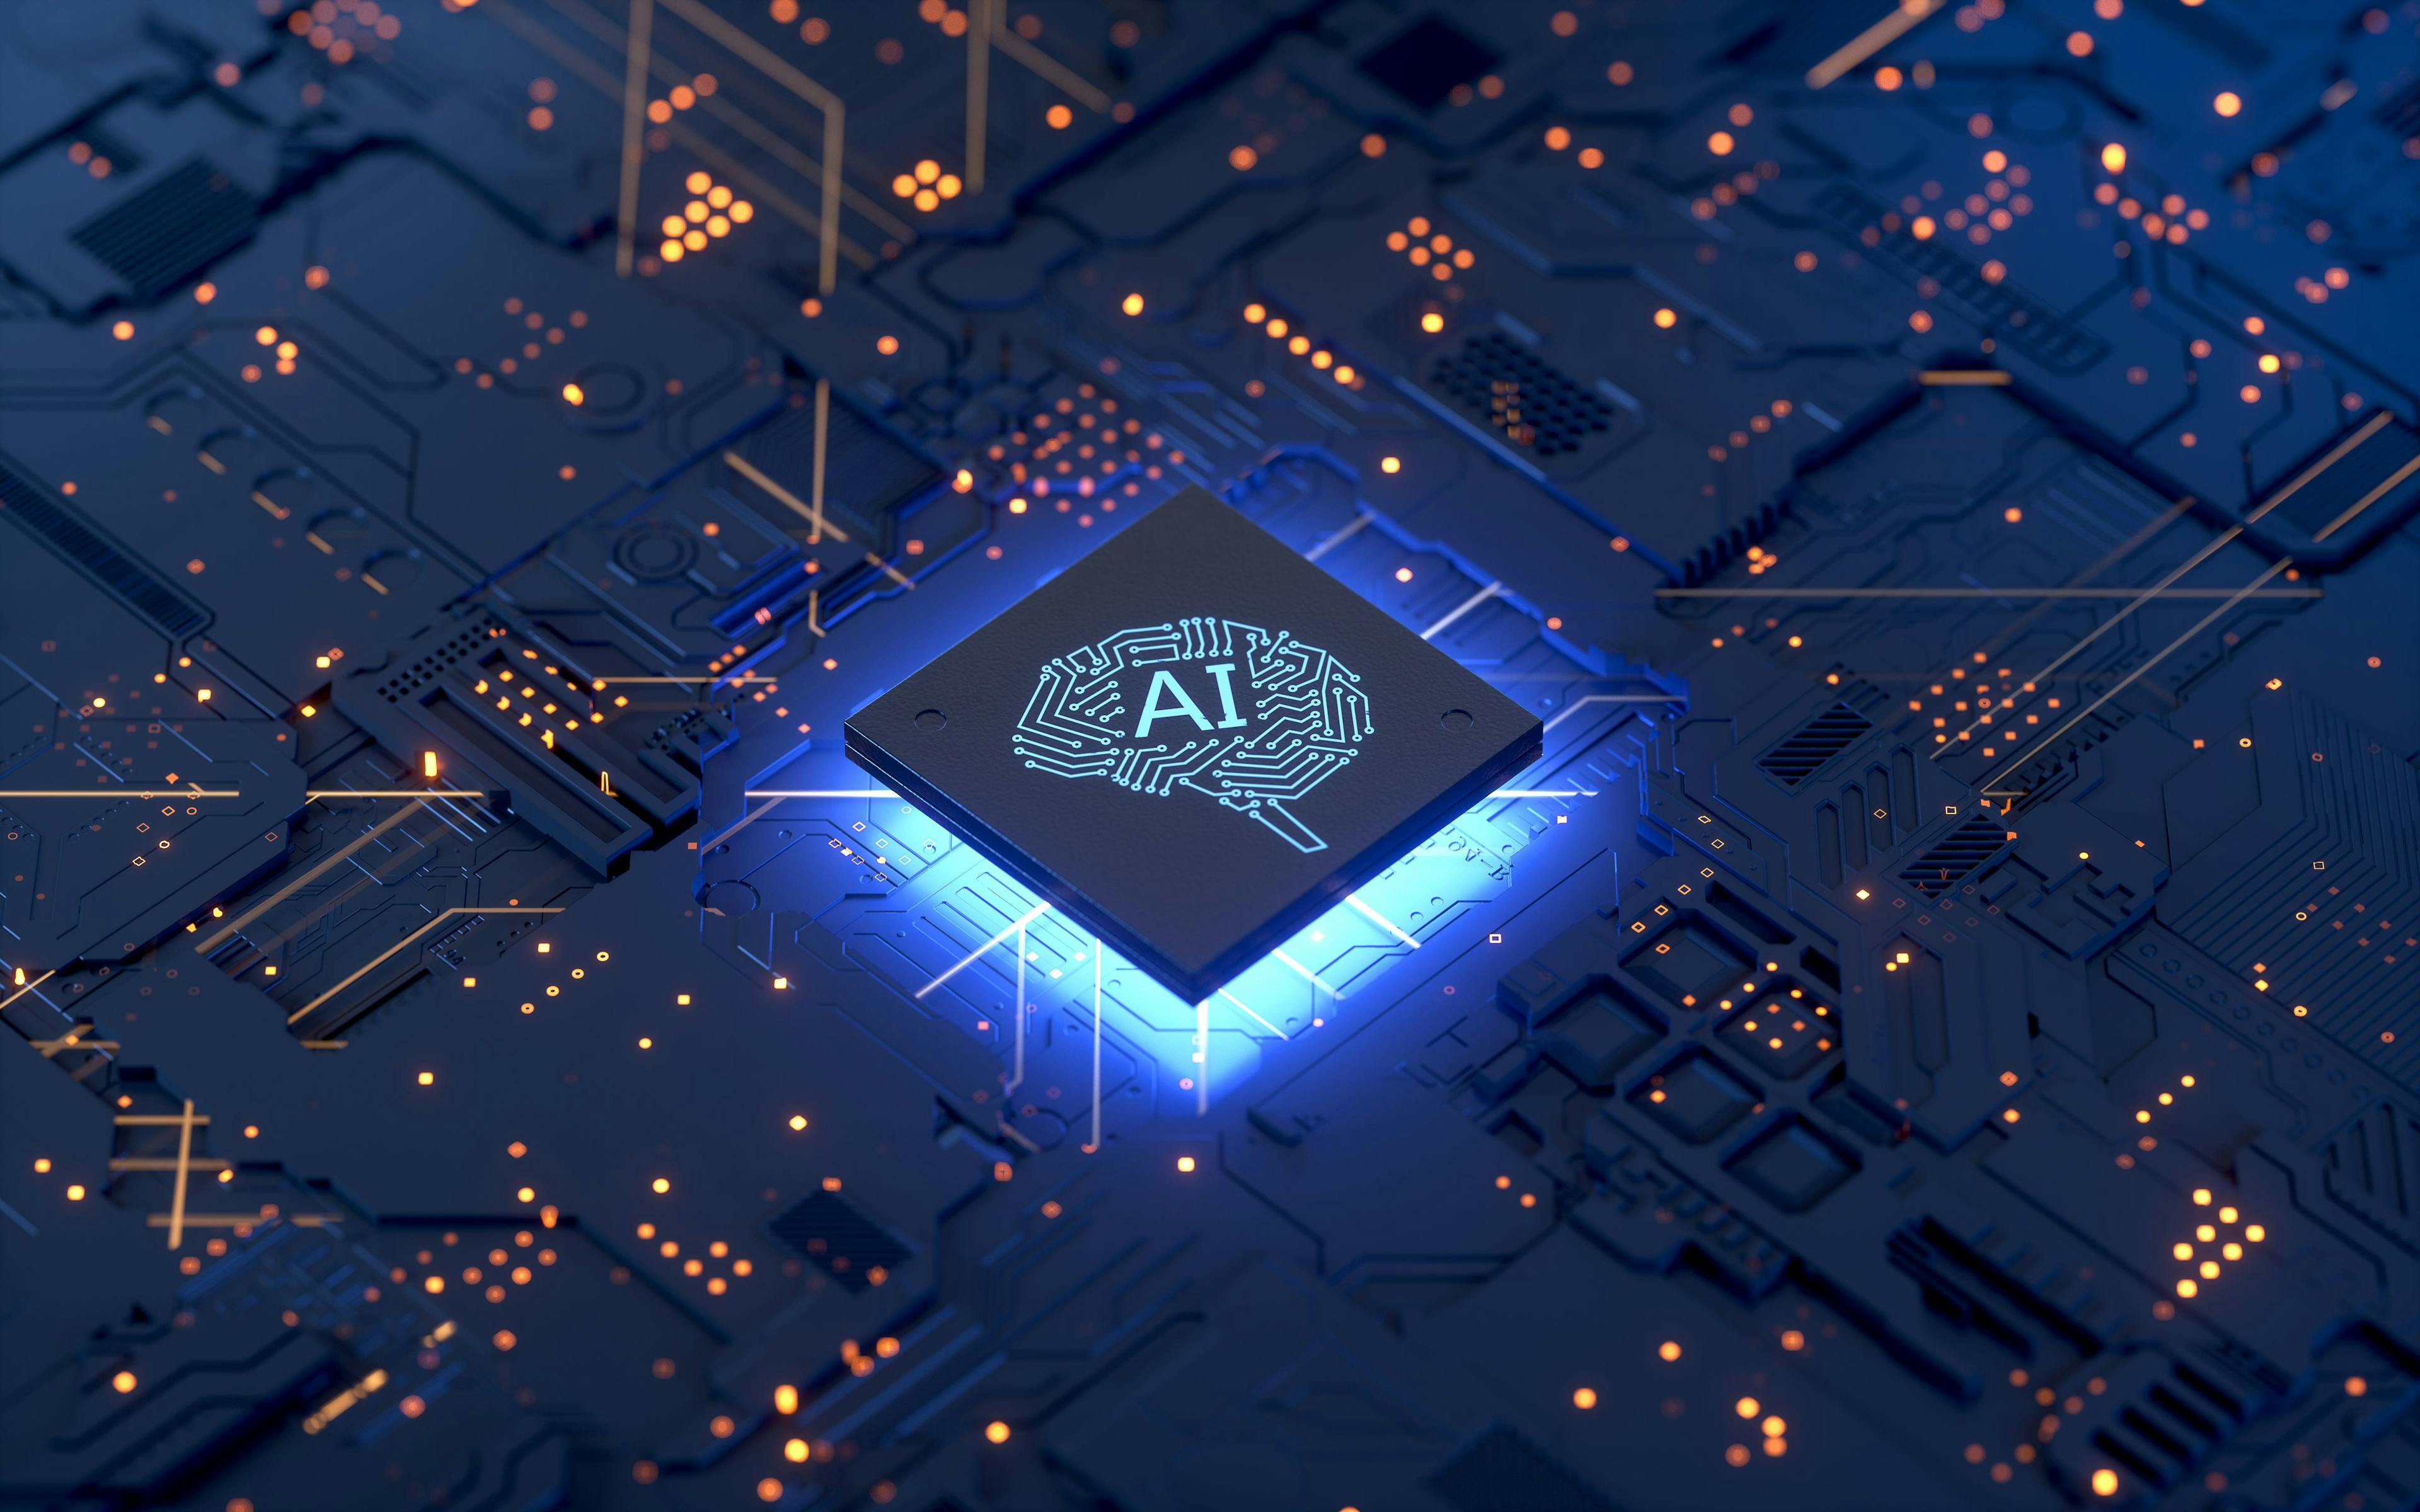 AI brain chip | © Shuo - stock.adobe.com